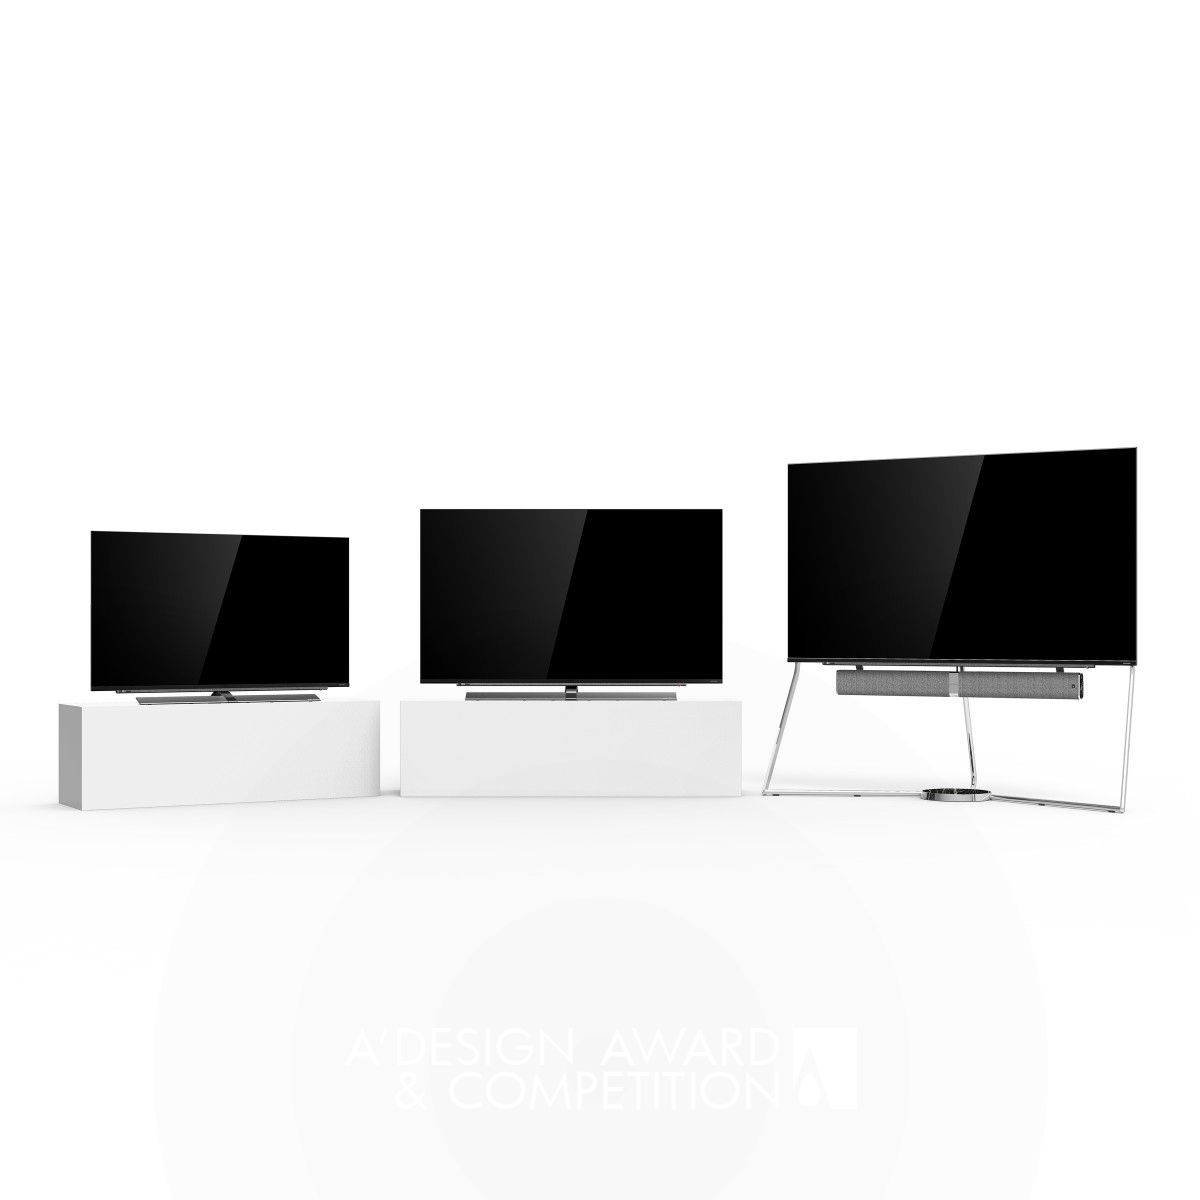 Konka LED A3 Series TV: Ein Meisterwerk des minimalistischen Designs